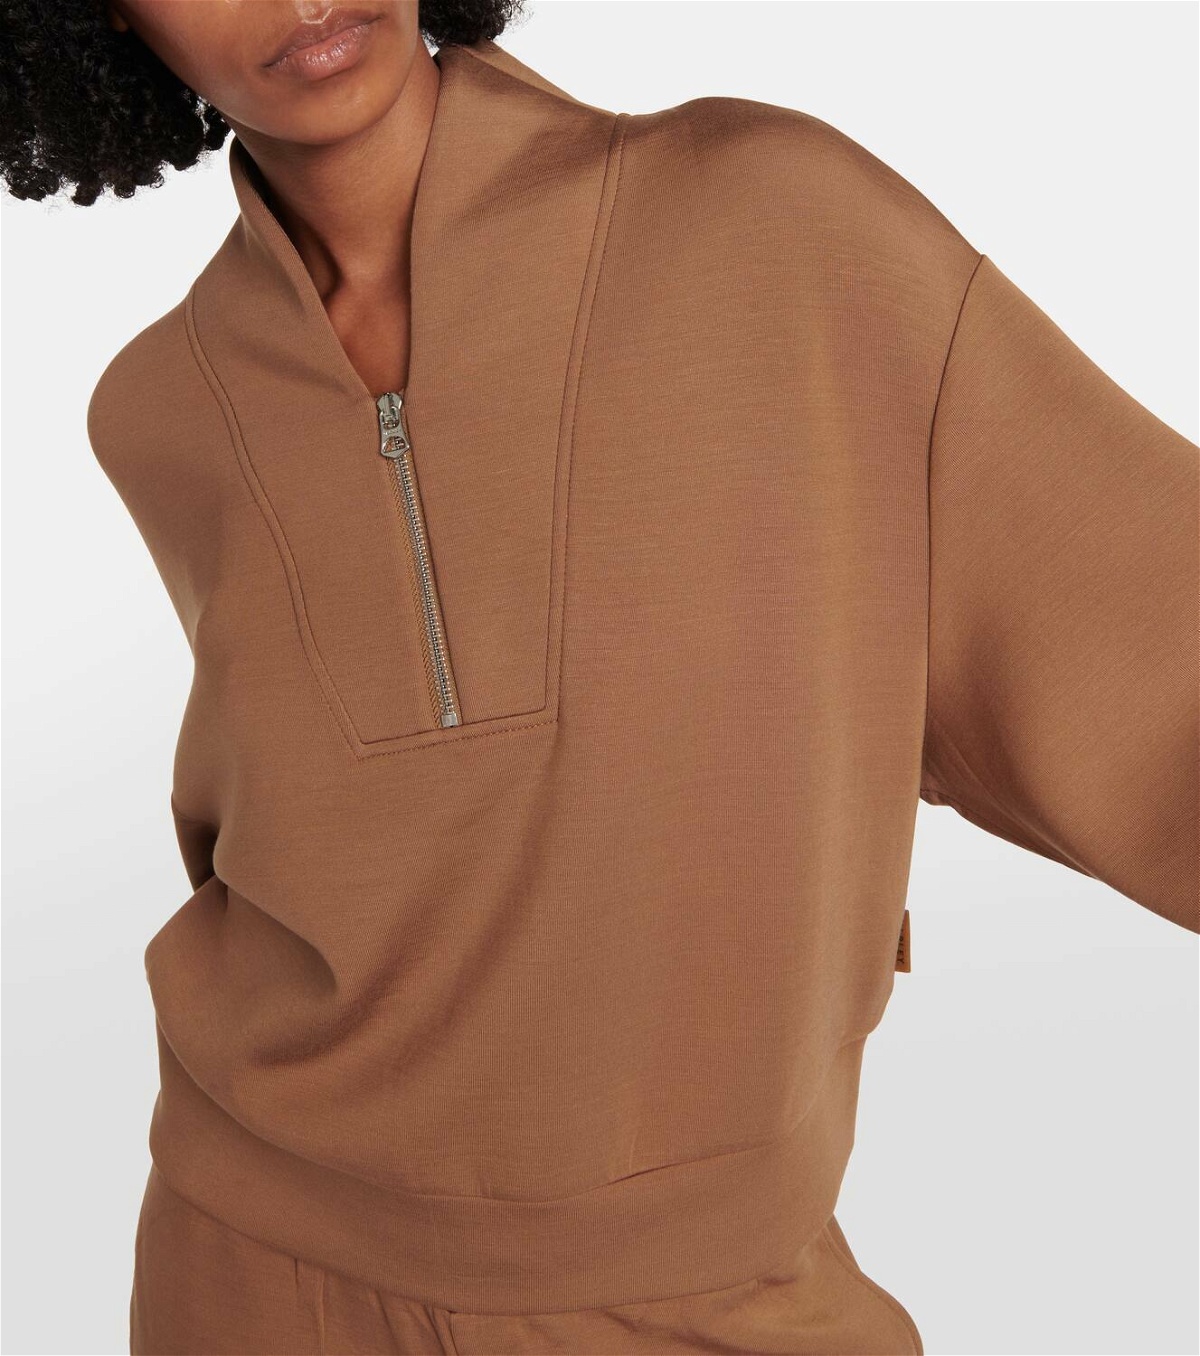 Varley Parnel Half Zip Fleece Pullover - Women's Sweatshirts in Golden  Broanze